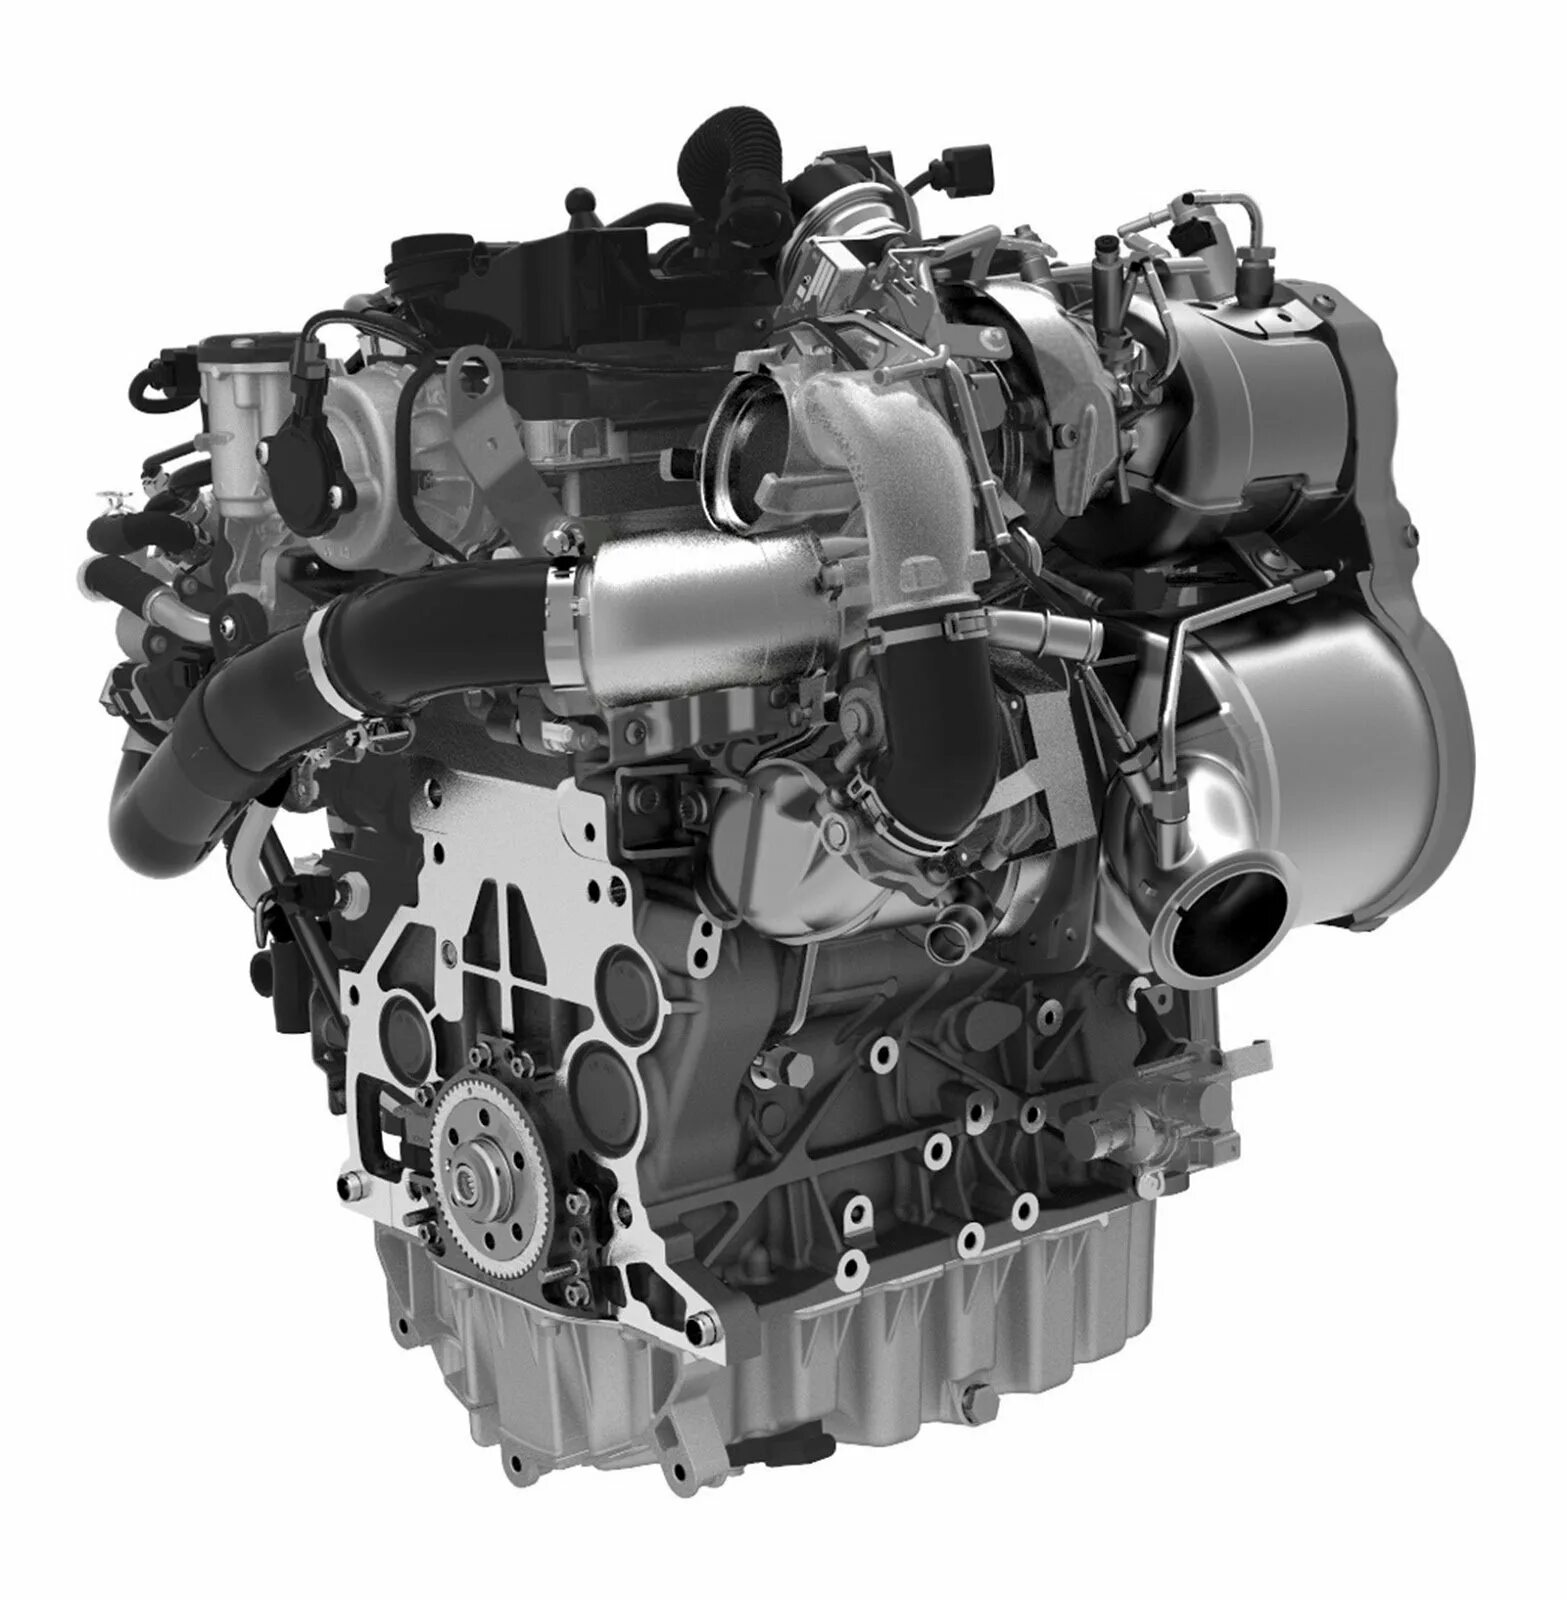 VW 2.0 TDI. Дизельные двигатели Фольксваген 2.0. Evoque 2.0 TDI двигатель. Ea288 2.0 TDI.